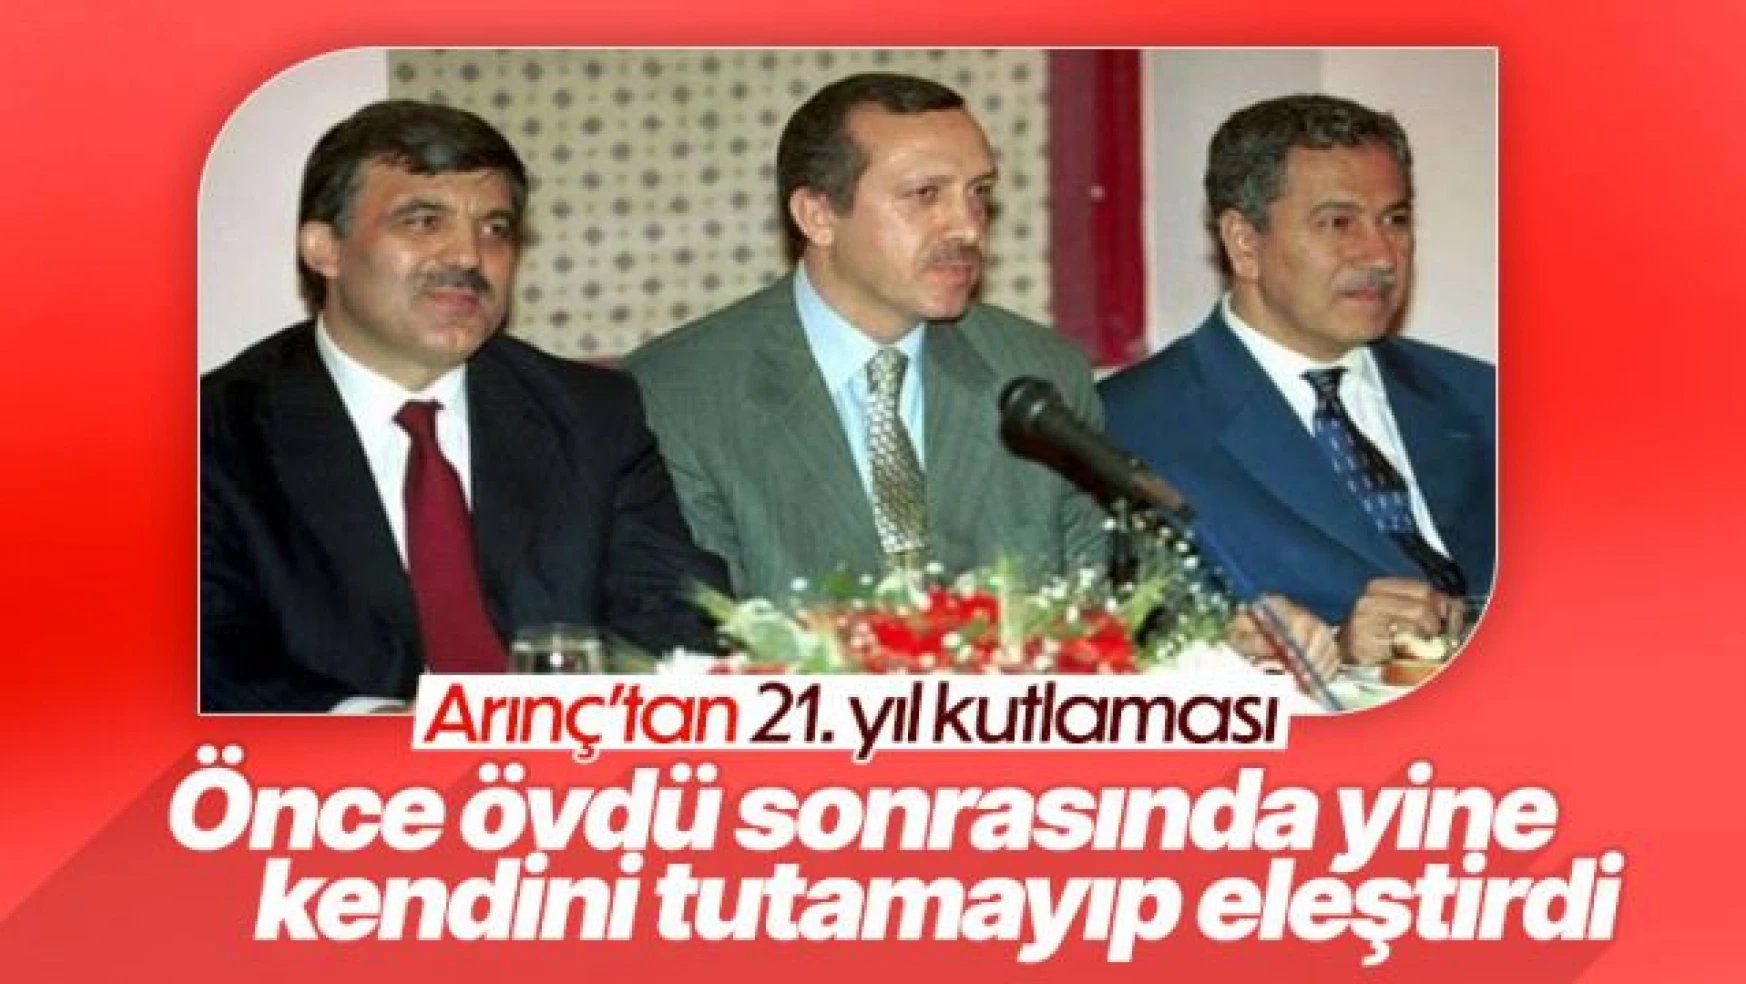 Bülent Arınç'tan AK Parti'nin kuruluş yıl dönümüne özel paylaşım